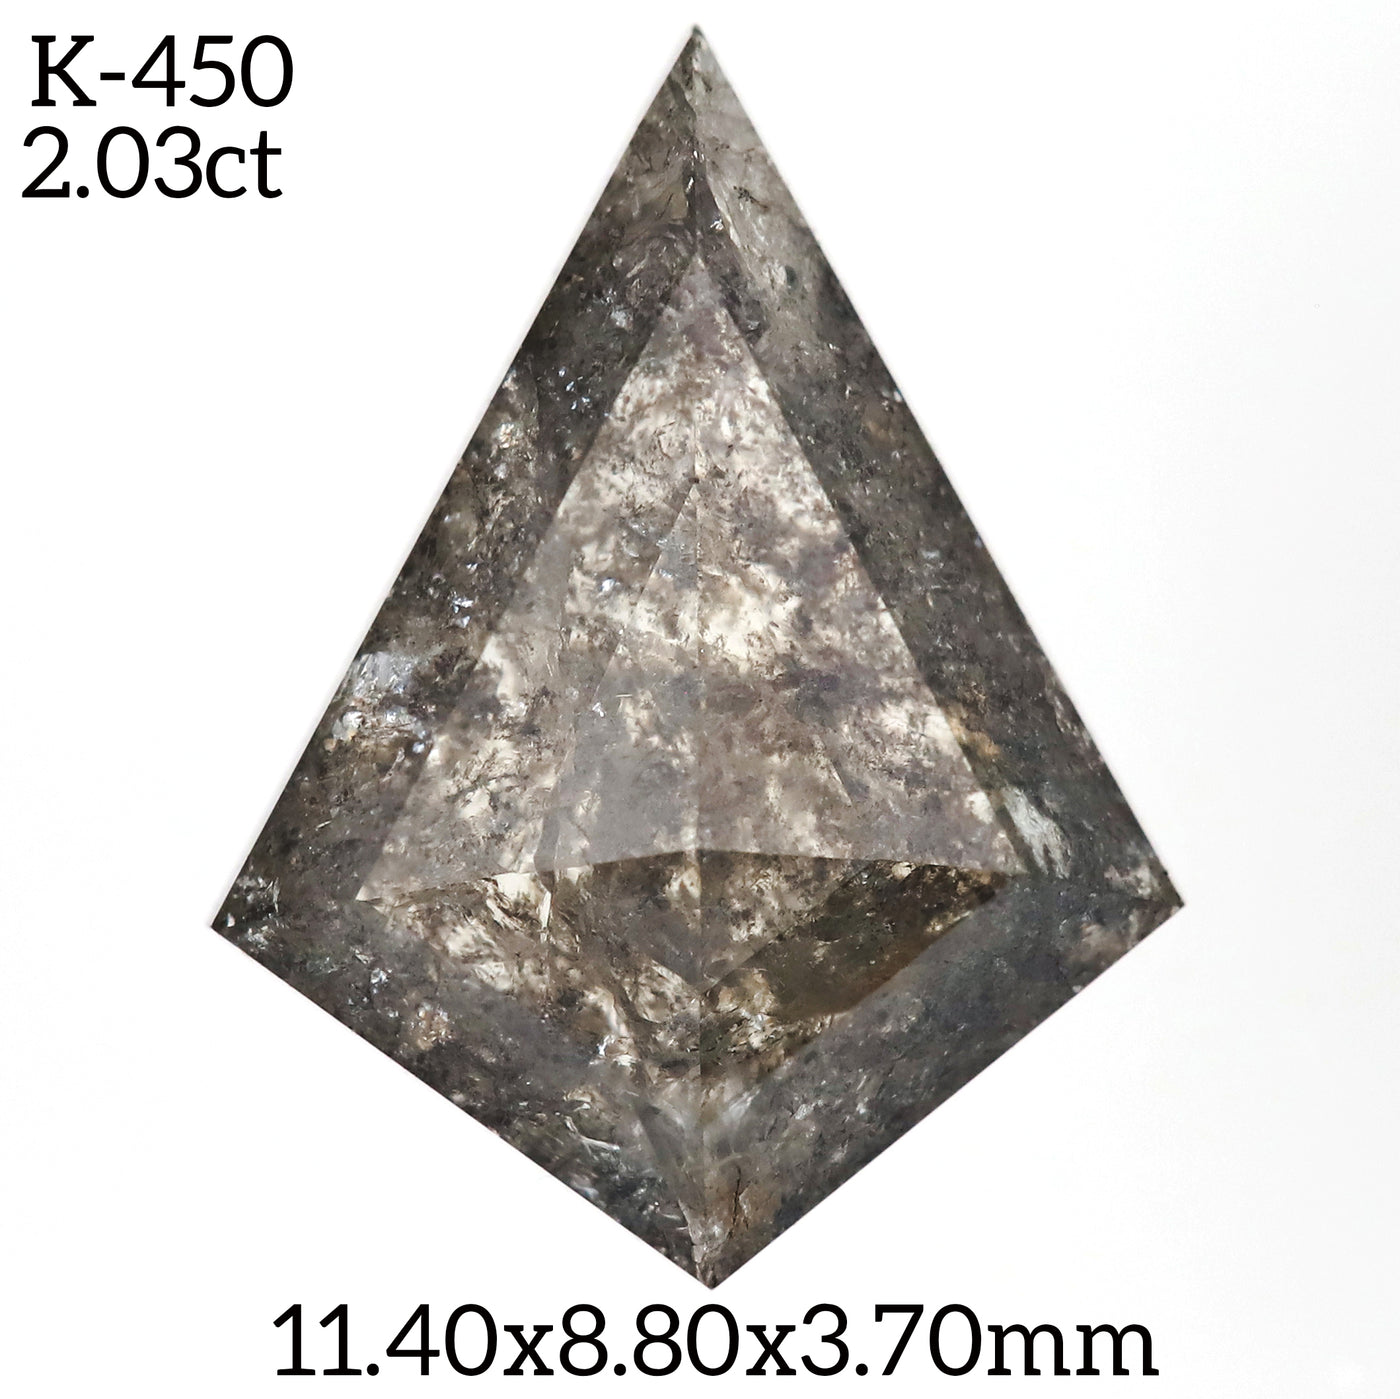 K450 - Salt and pepper kite diamond